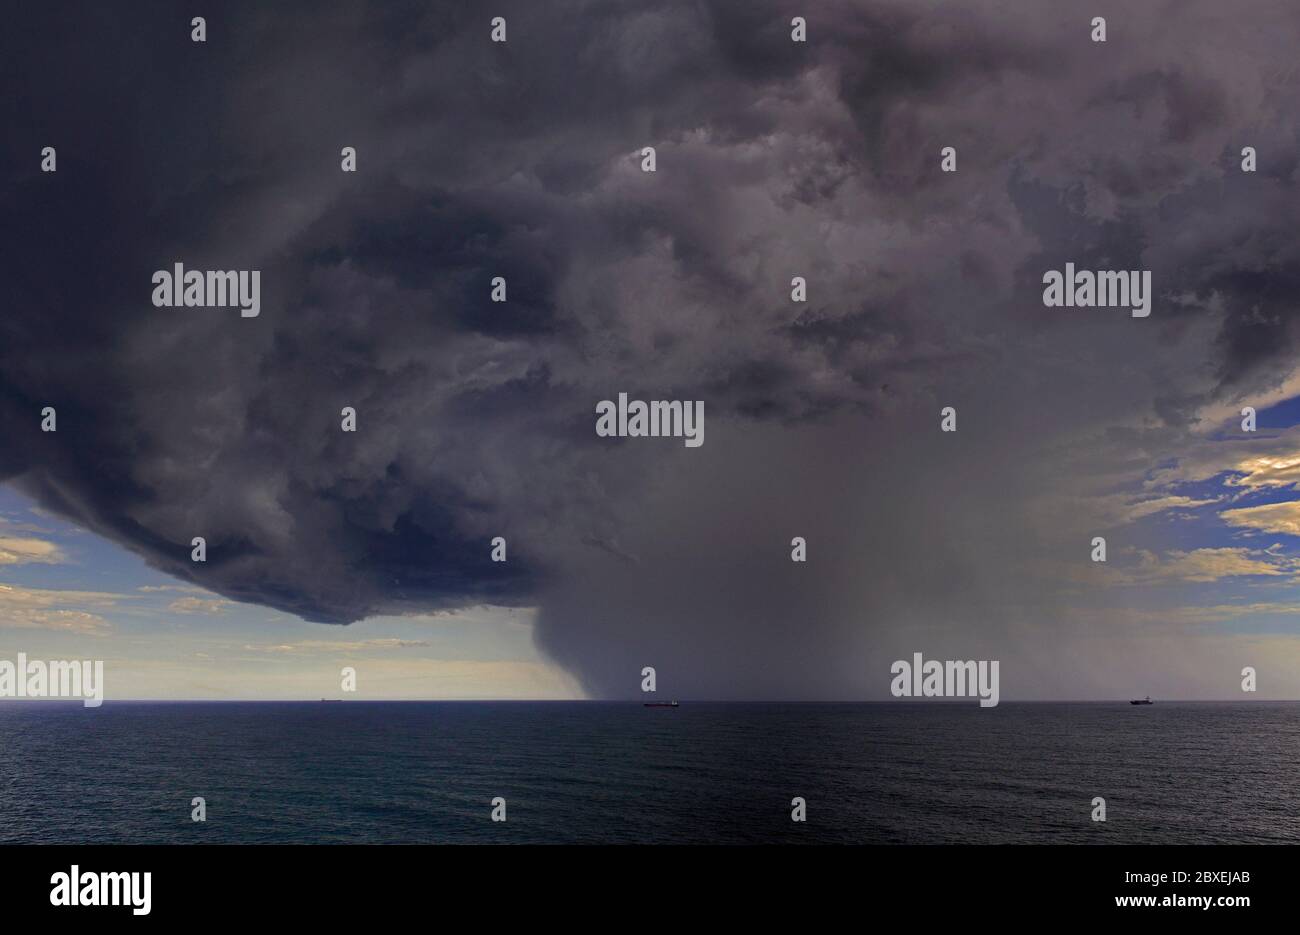 Off Shore rio grande 32.16 s 051.54 w, brasilien - 2014.02.02: Eine riesige Cumulonimbus-Wolke, die sich über dem südatlantik vor dem Himmel entwickelt Stockfoto